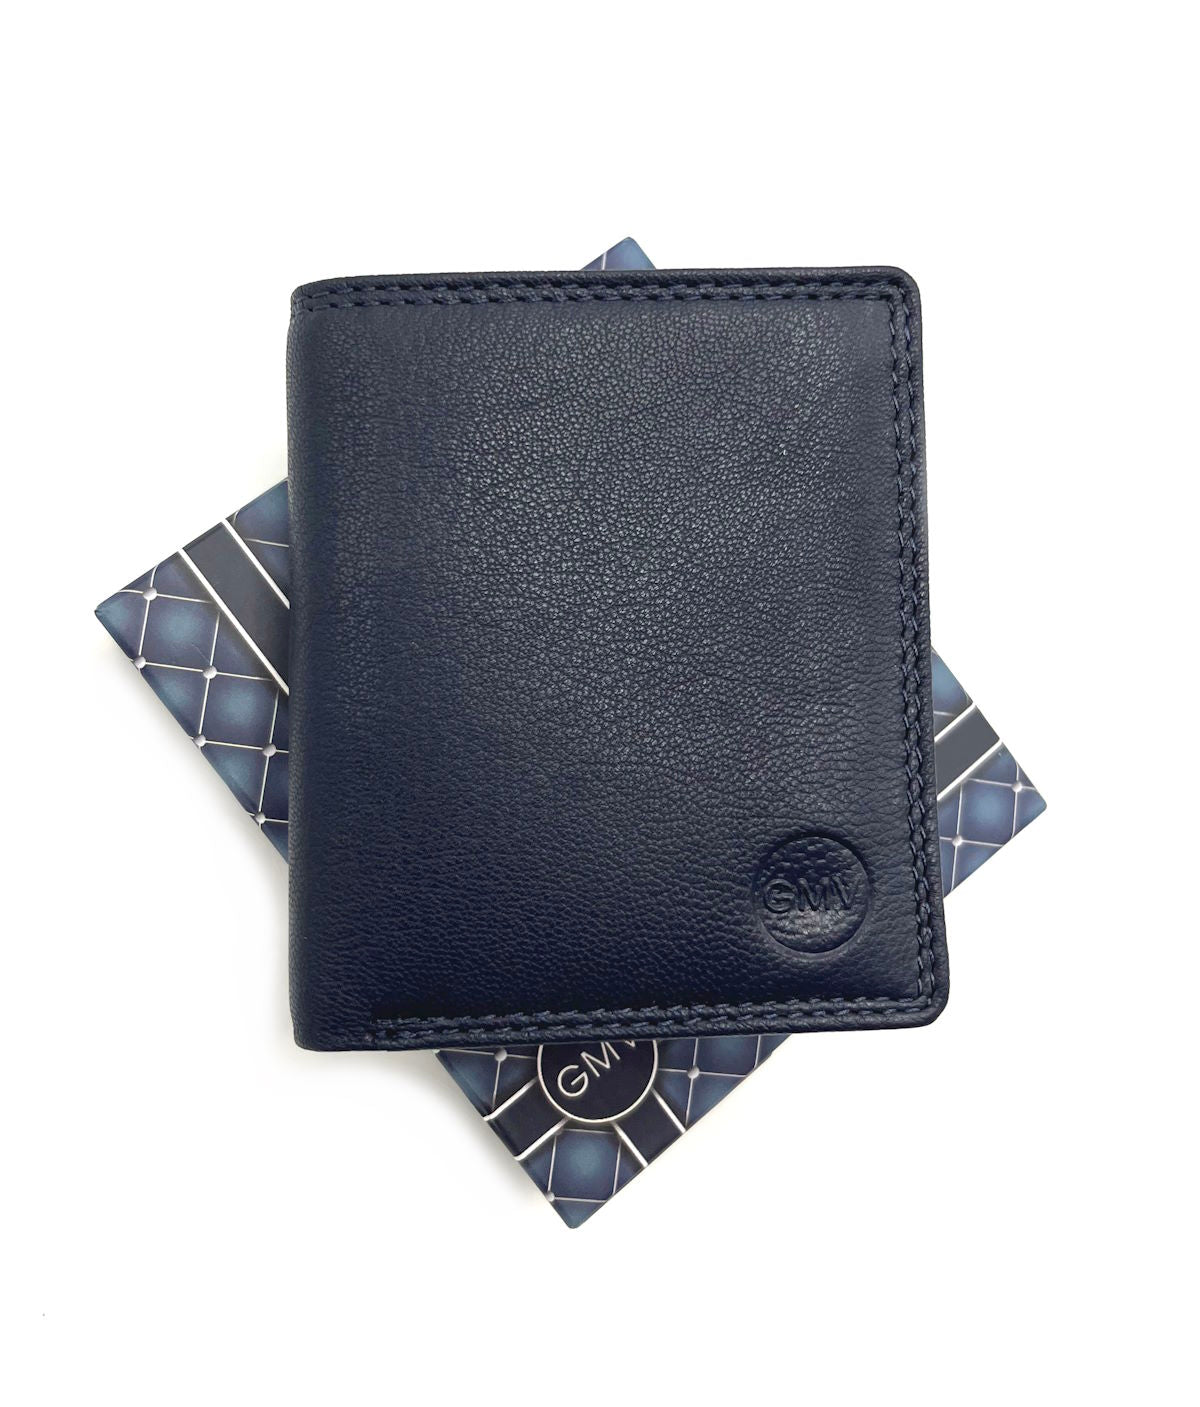 Genuine leather wallet, Brand GMV, art. GMV80-23